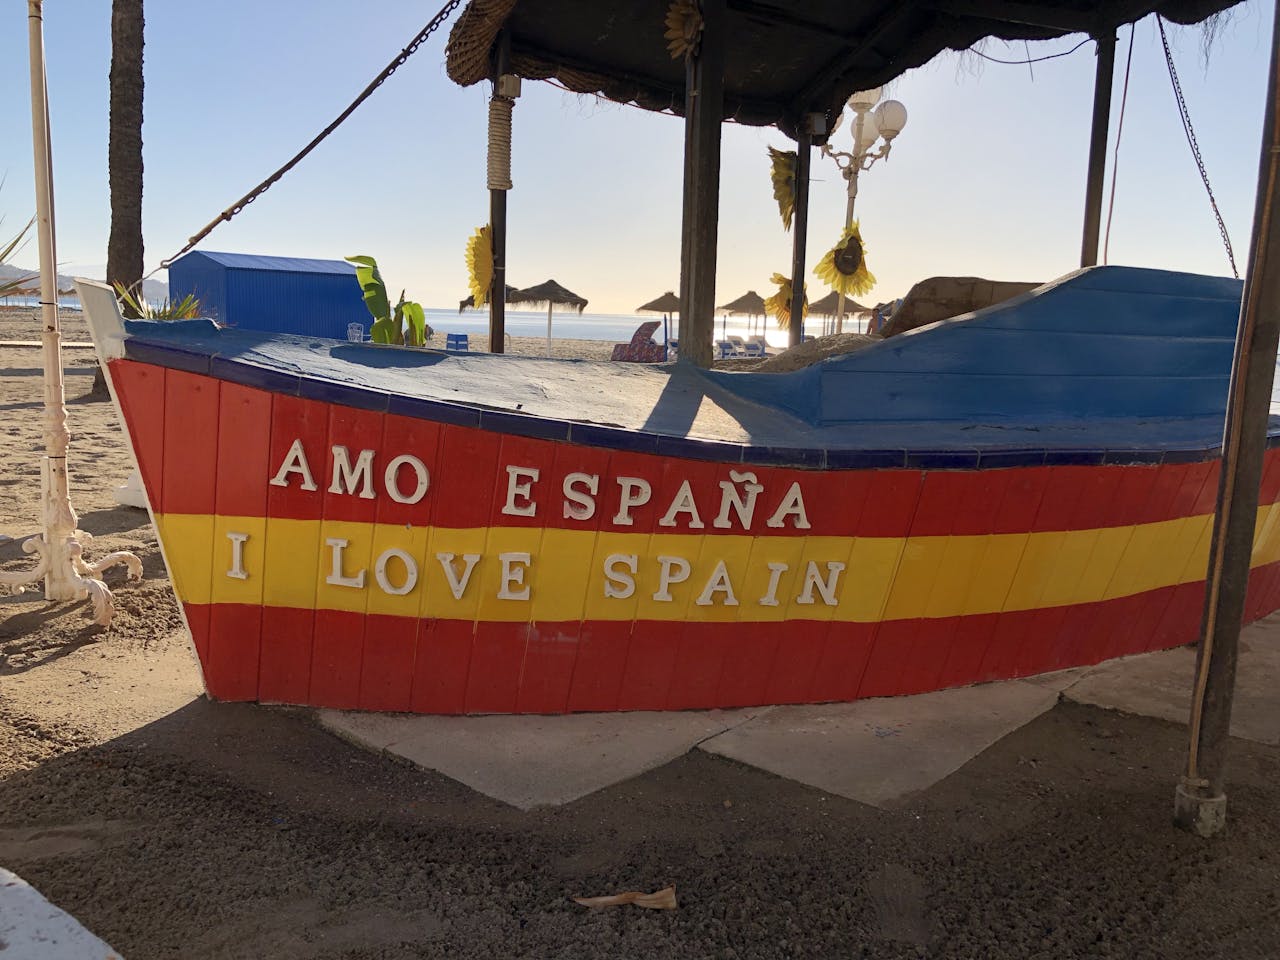 Spansk båd med "amo espana i love it" skrivet i stäven.